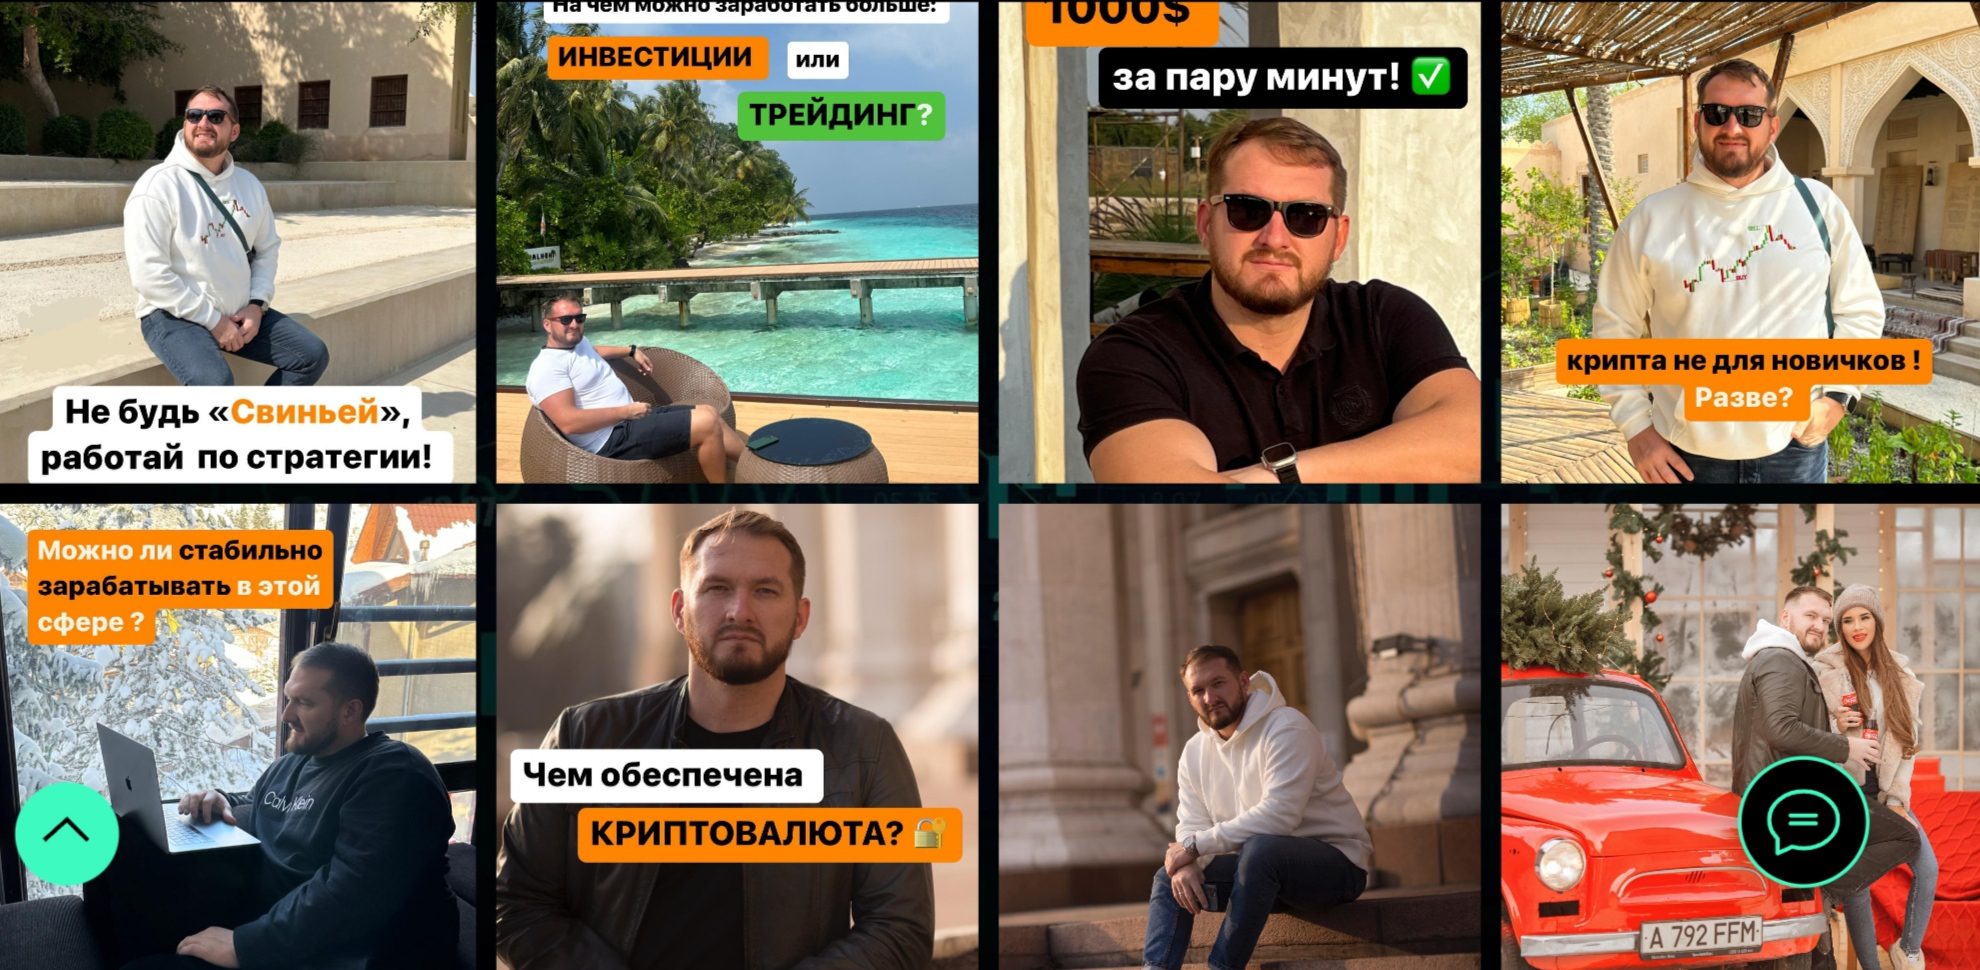 Дмитрий Мигунов инстаграм